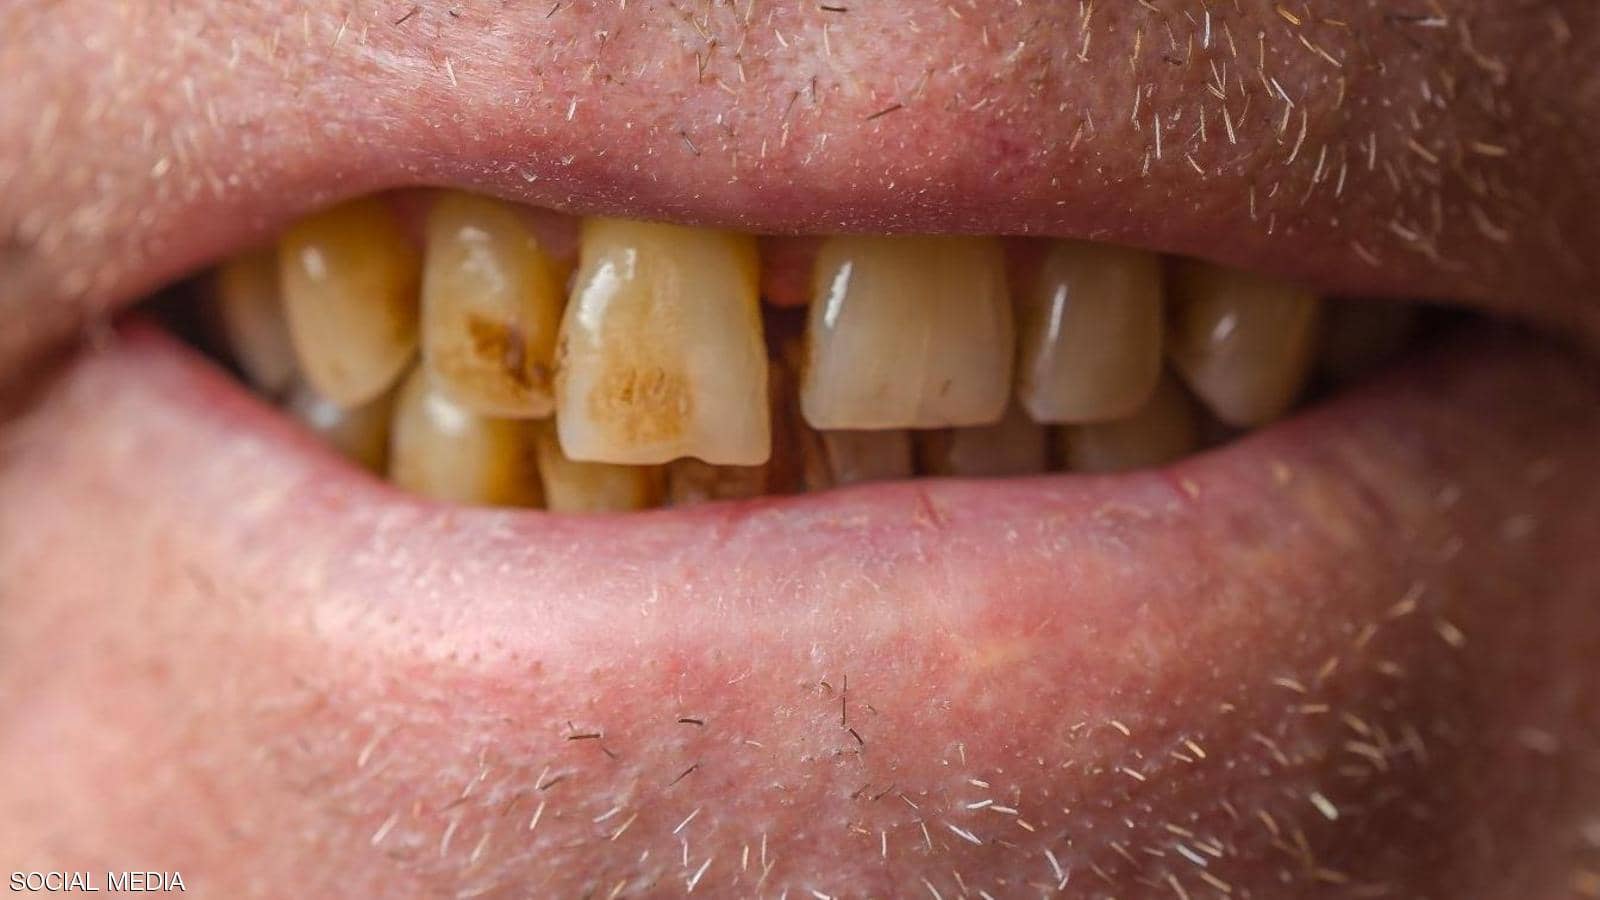 مقال – كيف تحمي أسنانك من "لون القهوة"؟